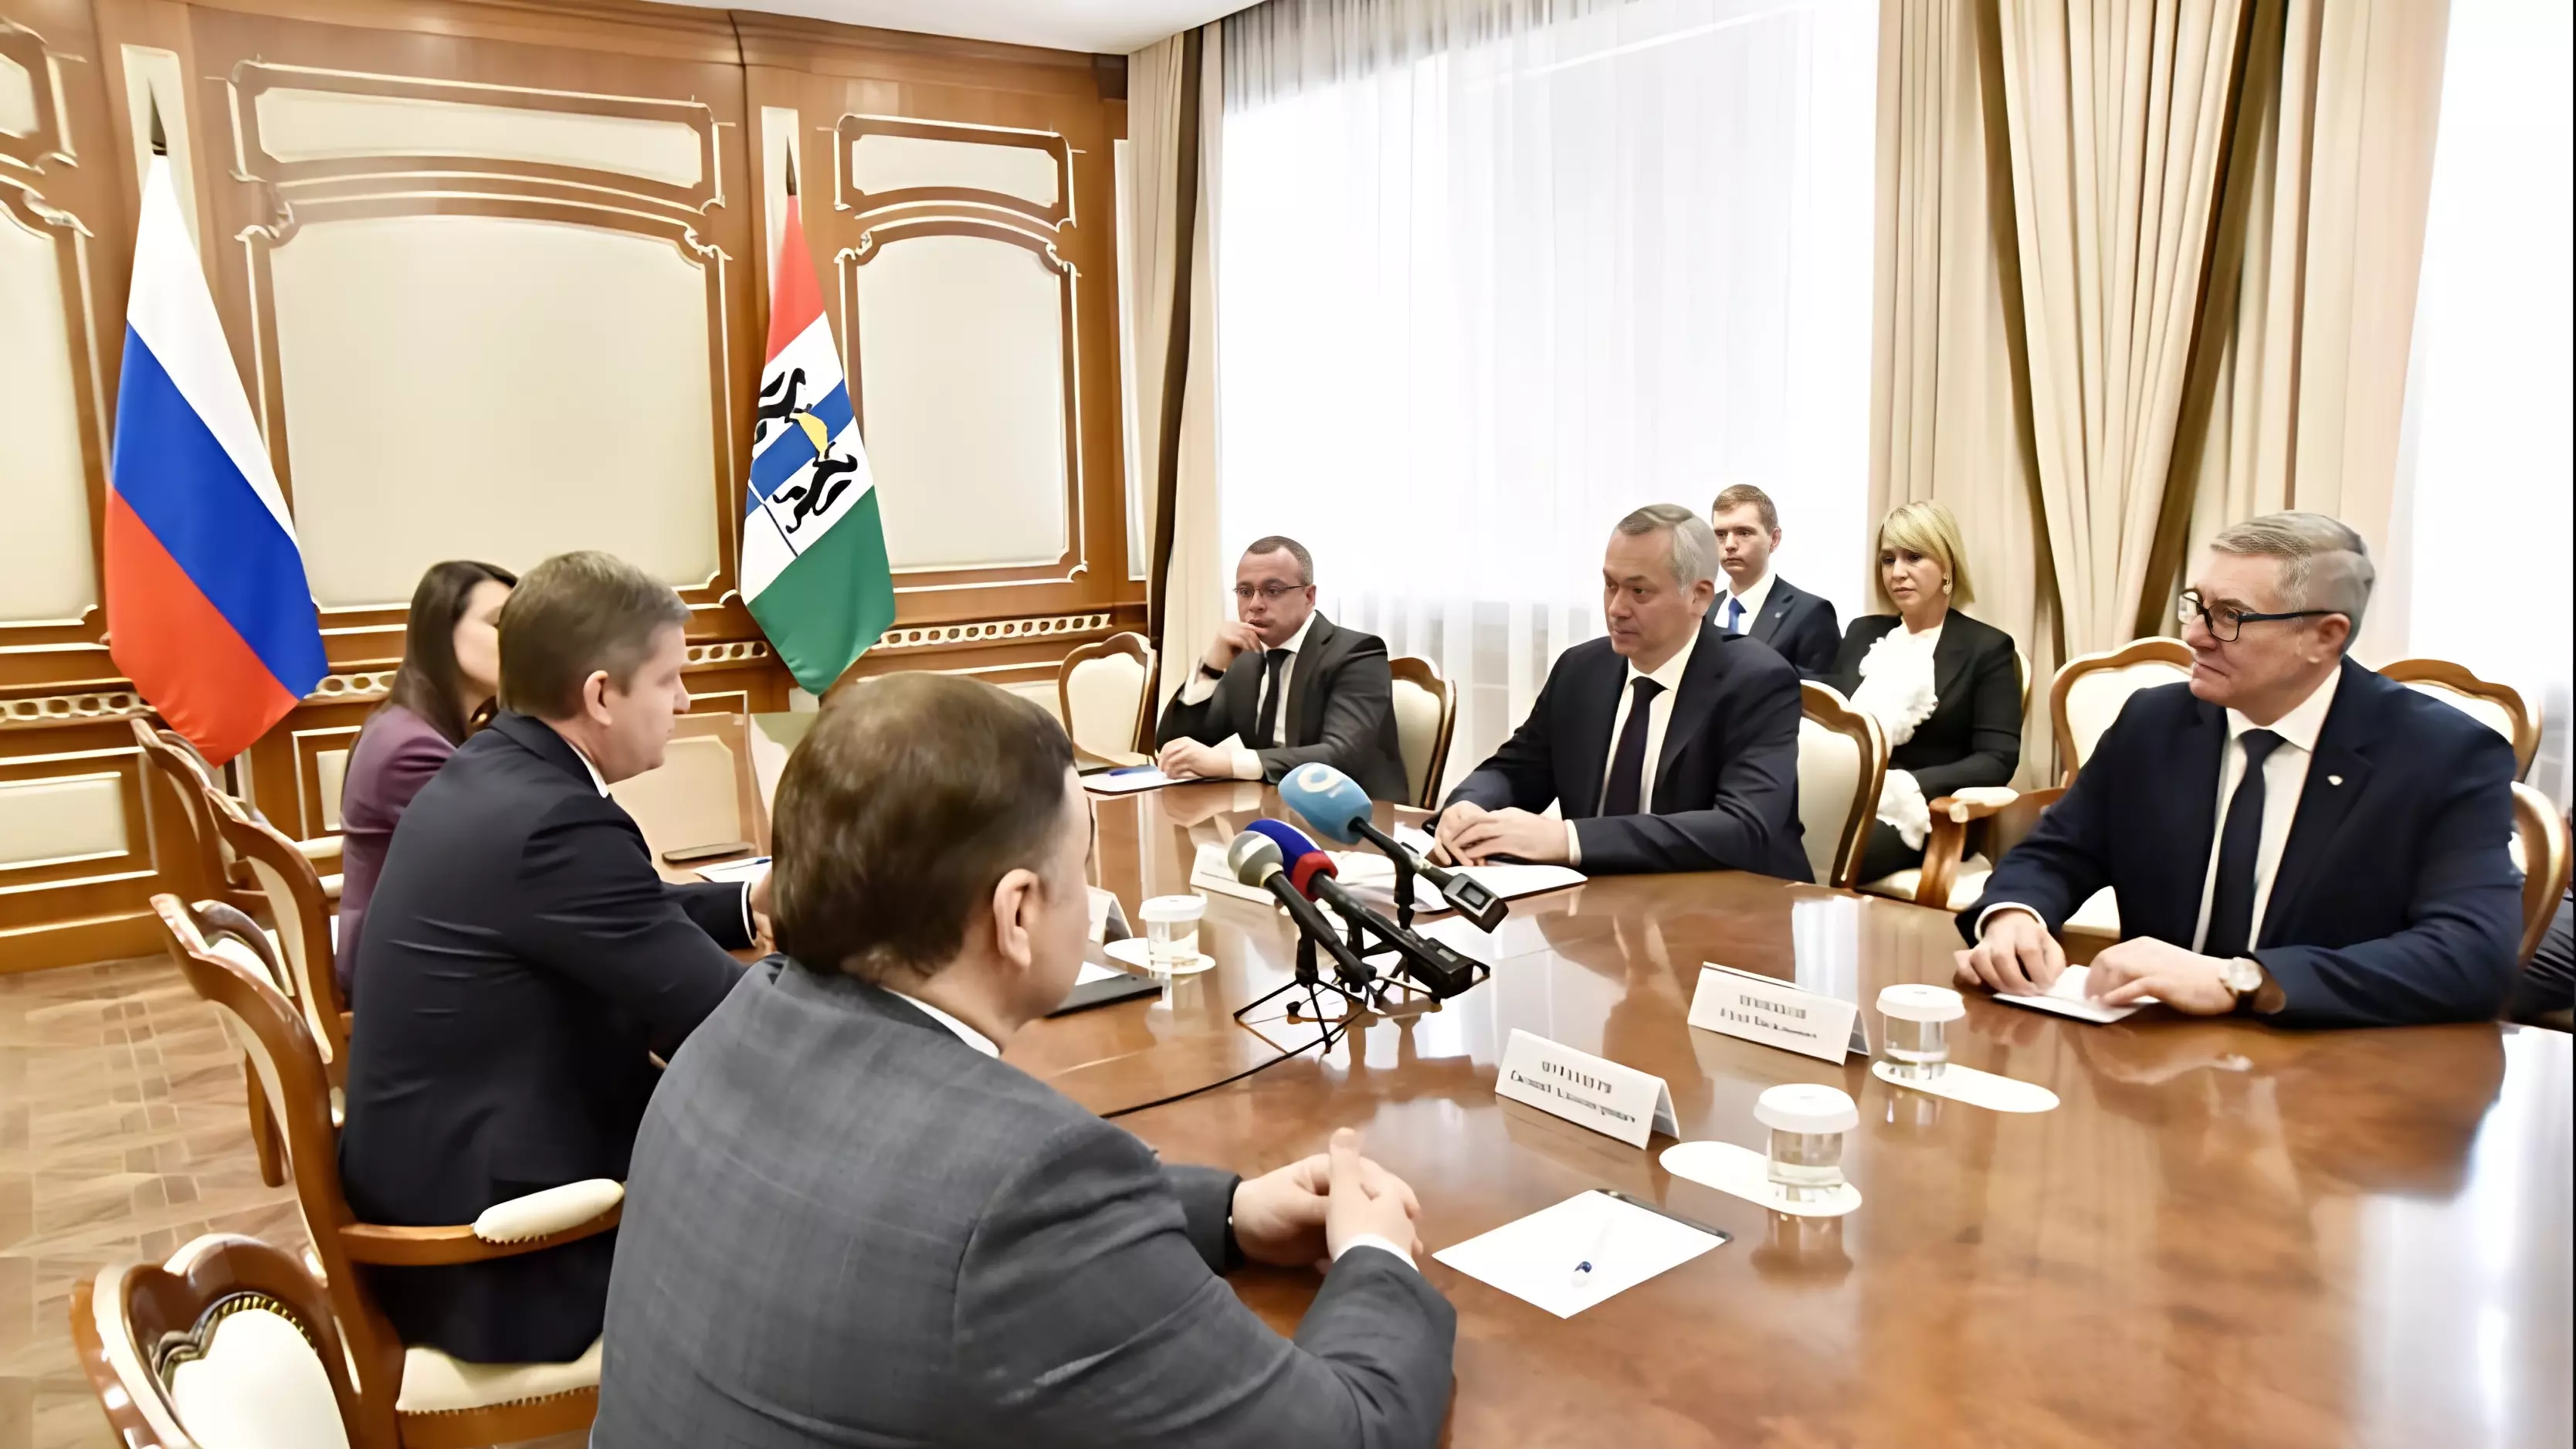 Губернатор Андрей Травников и генеральный директор фонда Роман Карманов подписали соглашение о сотрудничестве и взаимодействии